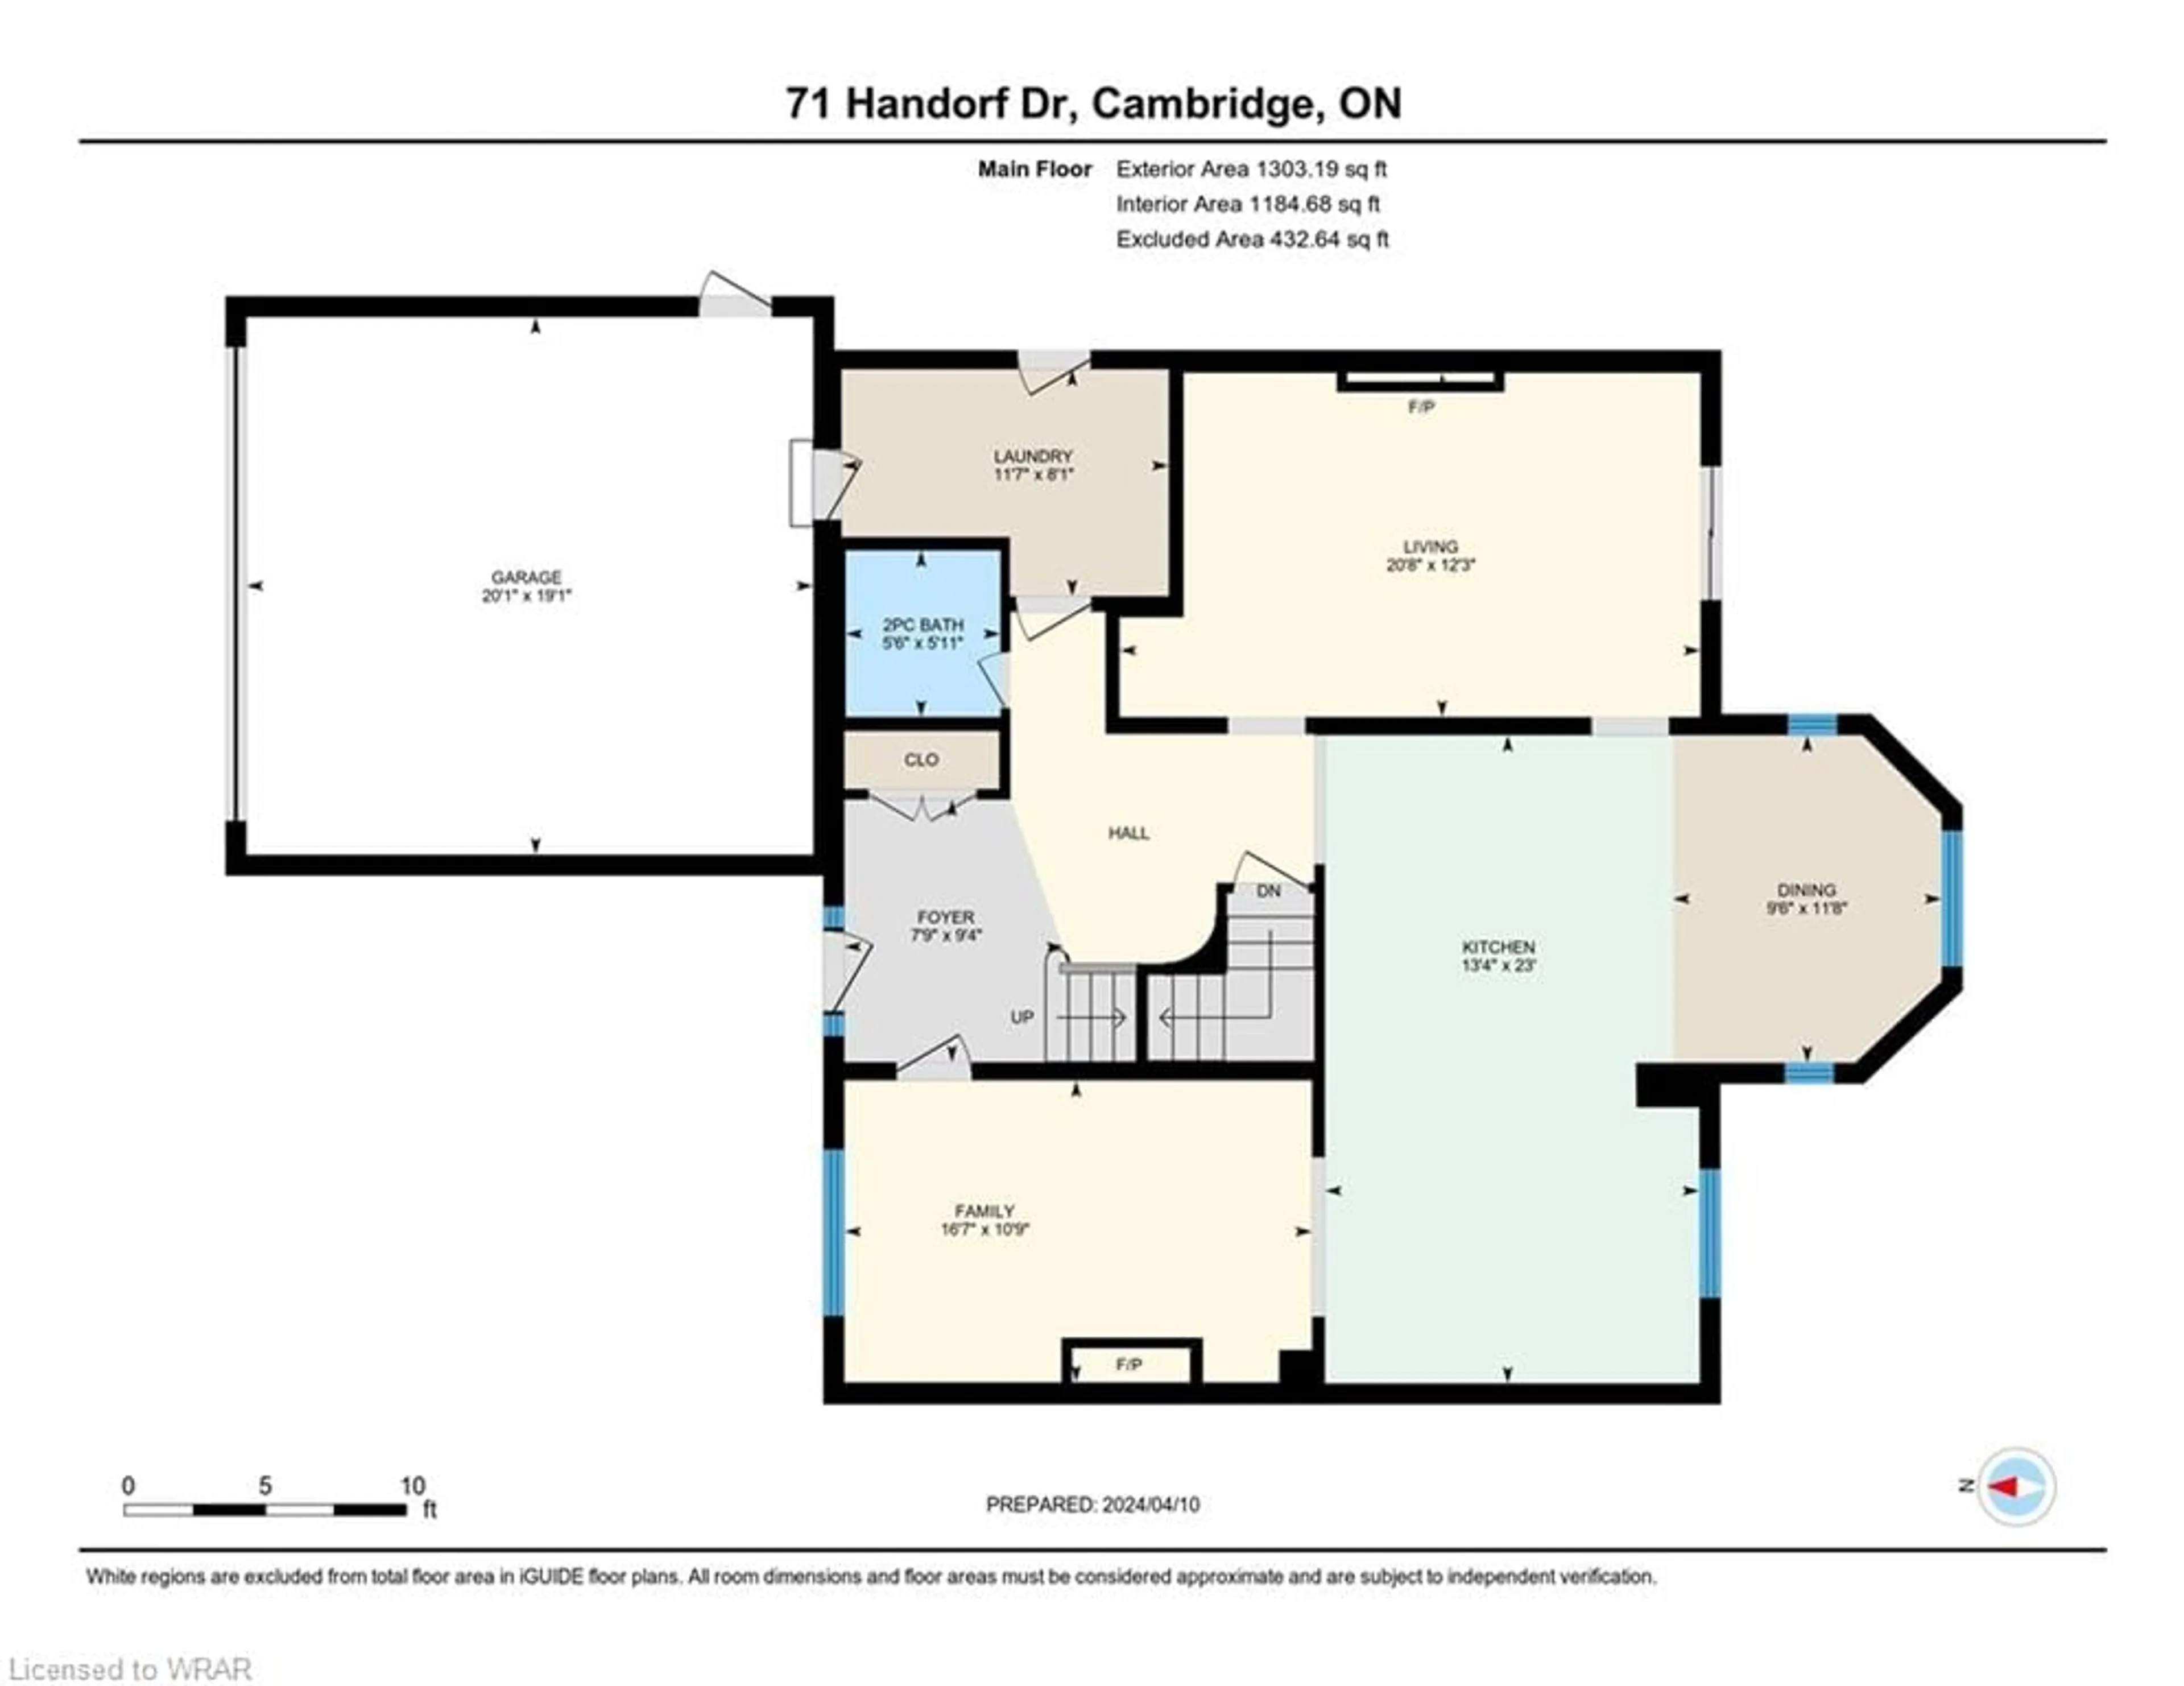 Floor plan for 71 Handorf Dr, Cambridge Ontario N3C 3Y3